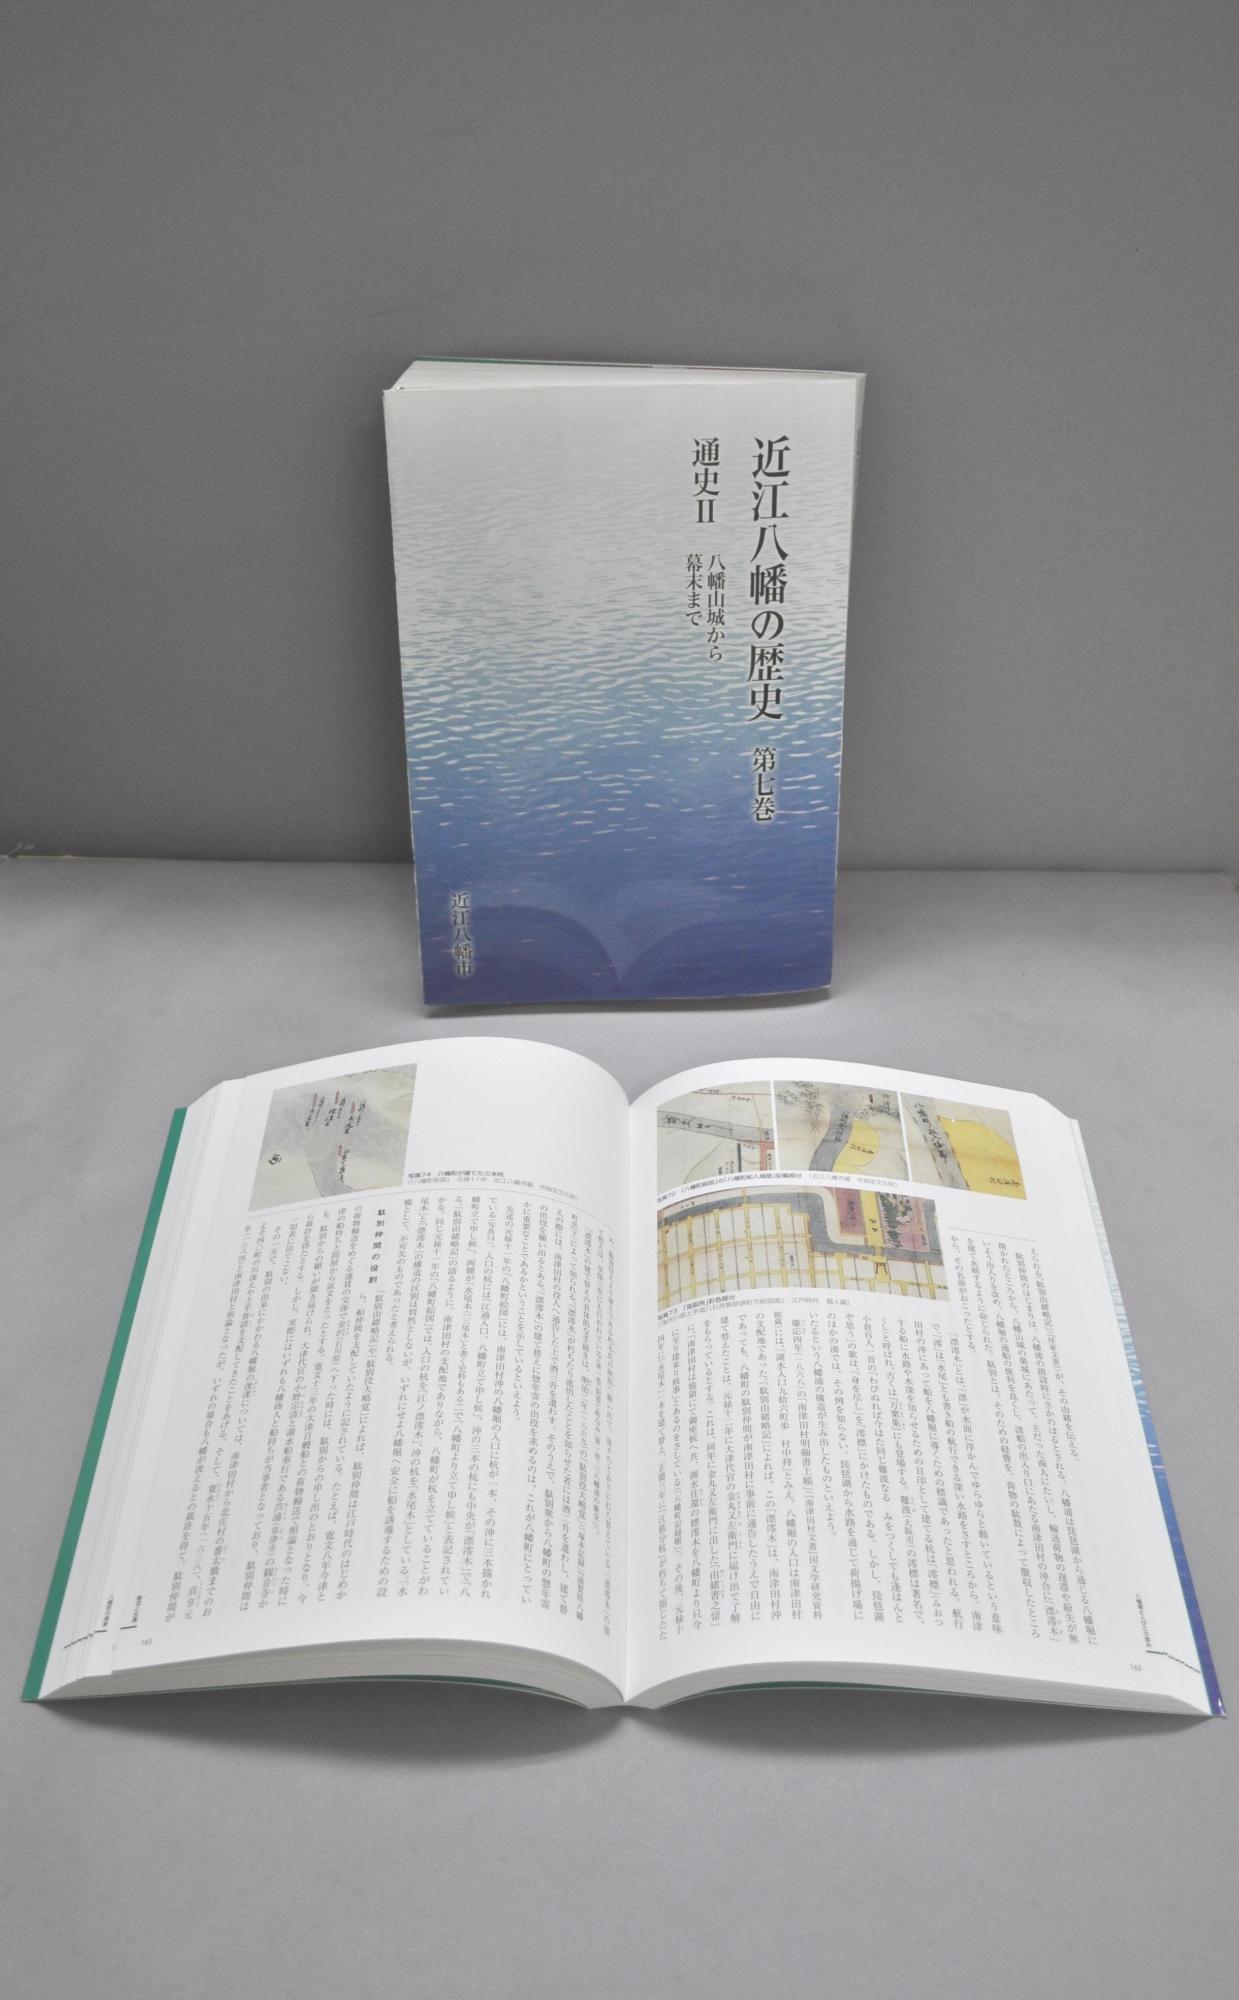 近江八幡の歴史第7巻を立てた表紙と、ページ中ほどを開いて手前に置かれた写真